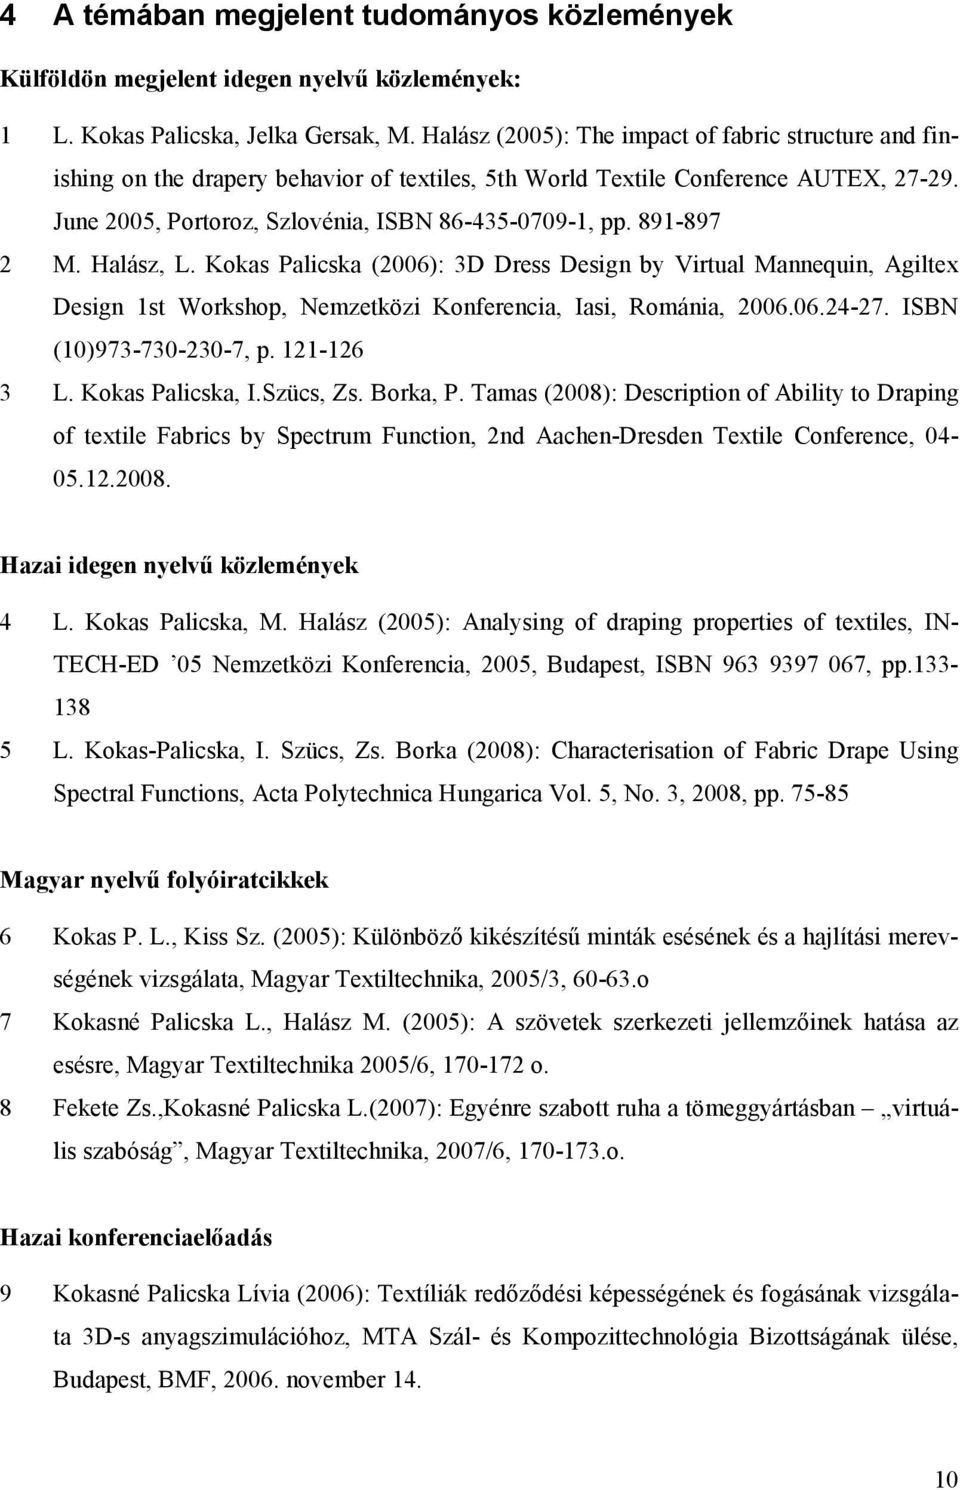 891-897 2 M. Halász, L. Kokas Palicska (2006): 3D Dress Design by Virtual Mannequin, Agiltex Design 1st Workshop, Nemzetközi Konferencia, Iasi, Románia, 2006.06.24-27. ISBN (10)973-730-230-7, p.